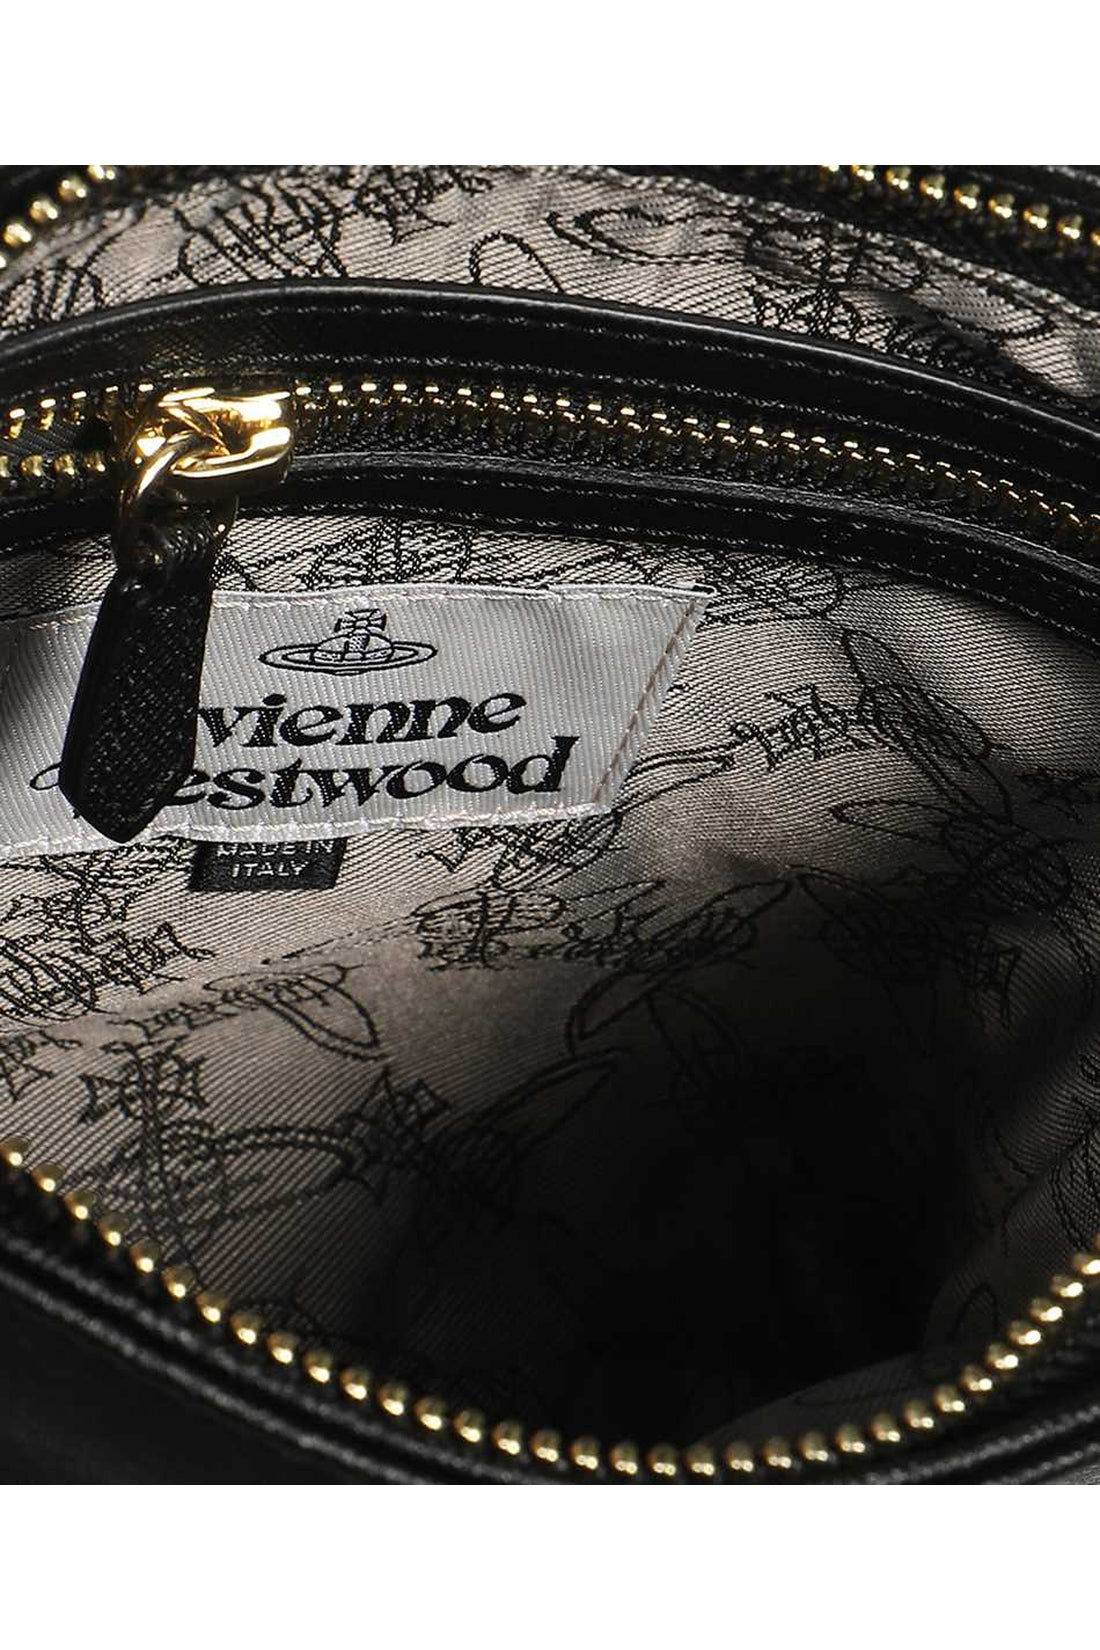 Vivienne Westwood-OUTLET-SALE-Squire Square crossbody bag-ARCHIVIST